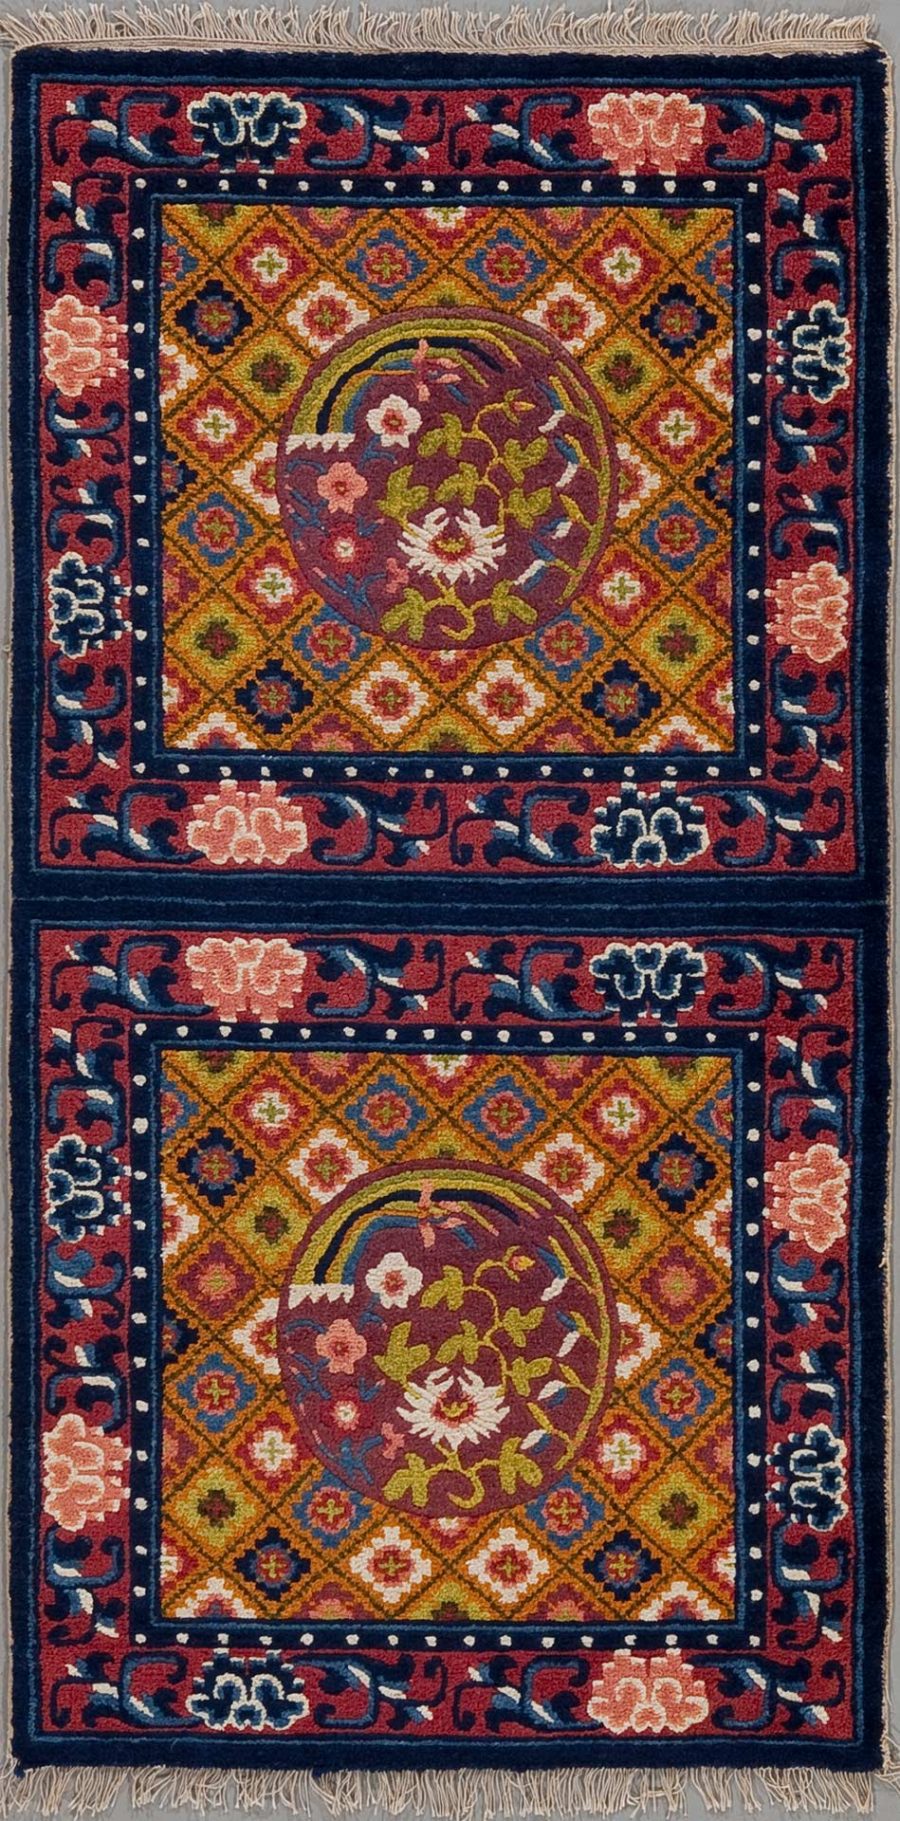 Traditioneller handgeknüpfter Teppich mit zwei zentralen Medaillons auf burgunderrotem Grund, umgeben von geometrischen und floralen Mustern in Blau, Orange und Creme, mit einer dunkelblauen Bordüre und Fransen an den Enden.